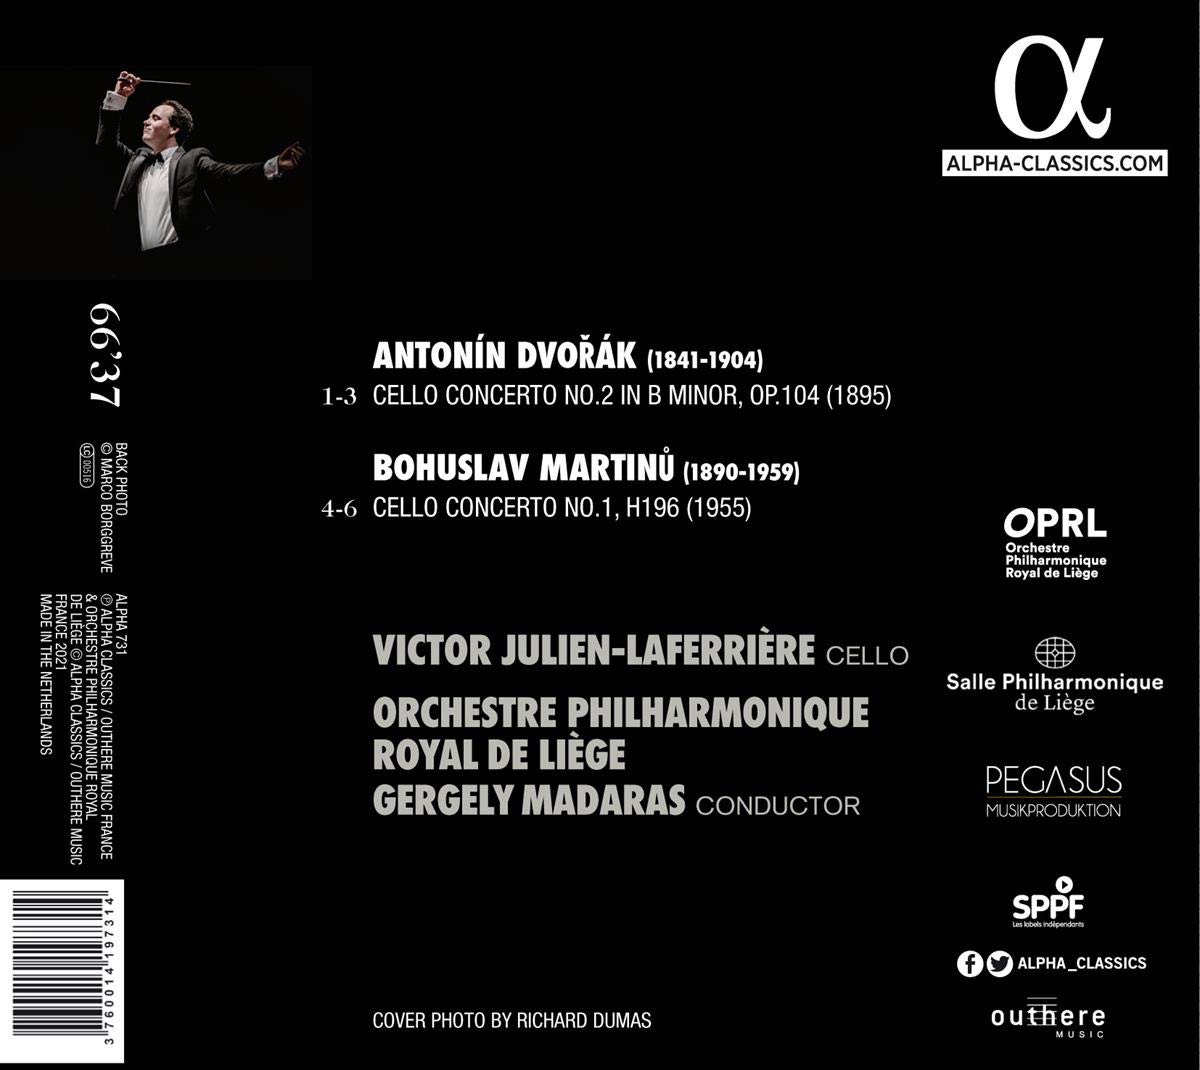 Victor Julien-Laferriere 드보르작 / 마르티누: 첼로 협주곡 (Dvorak: Cello Concerto Op.104 / Martinu: Cello Concerto No.1 H.196)